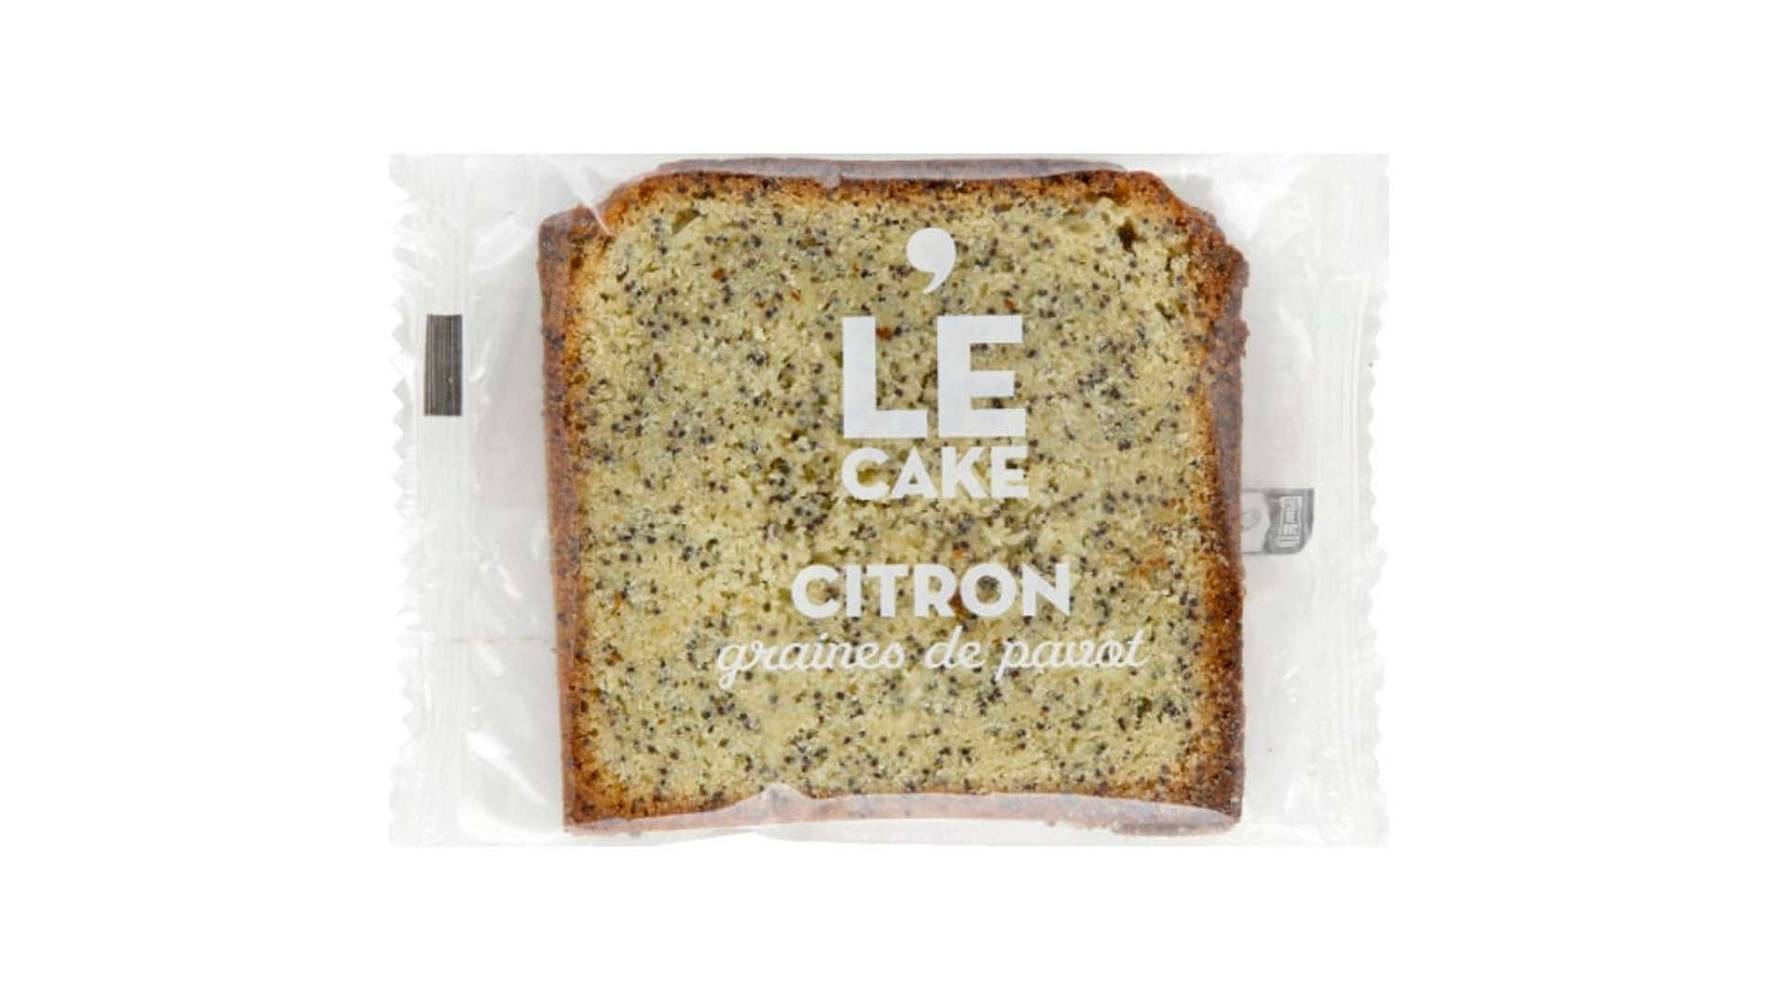 Monoprix Le Cake citron graines de pavot Le paquet de 80 g